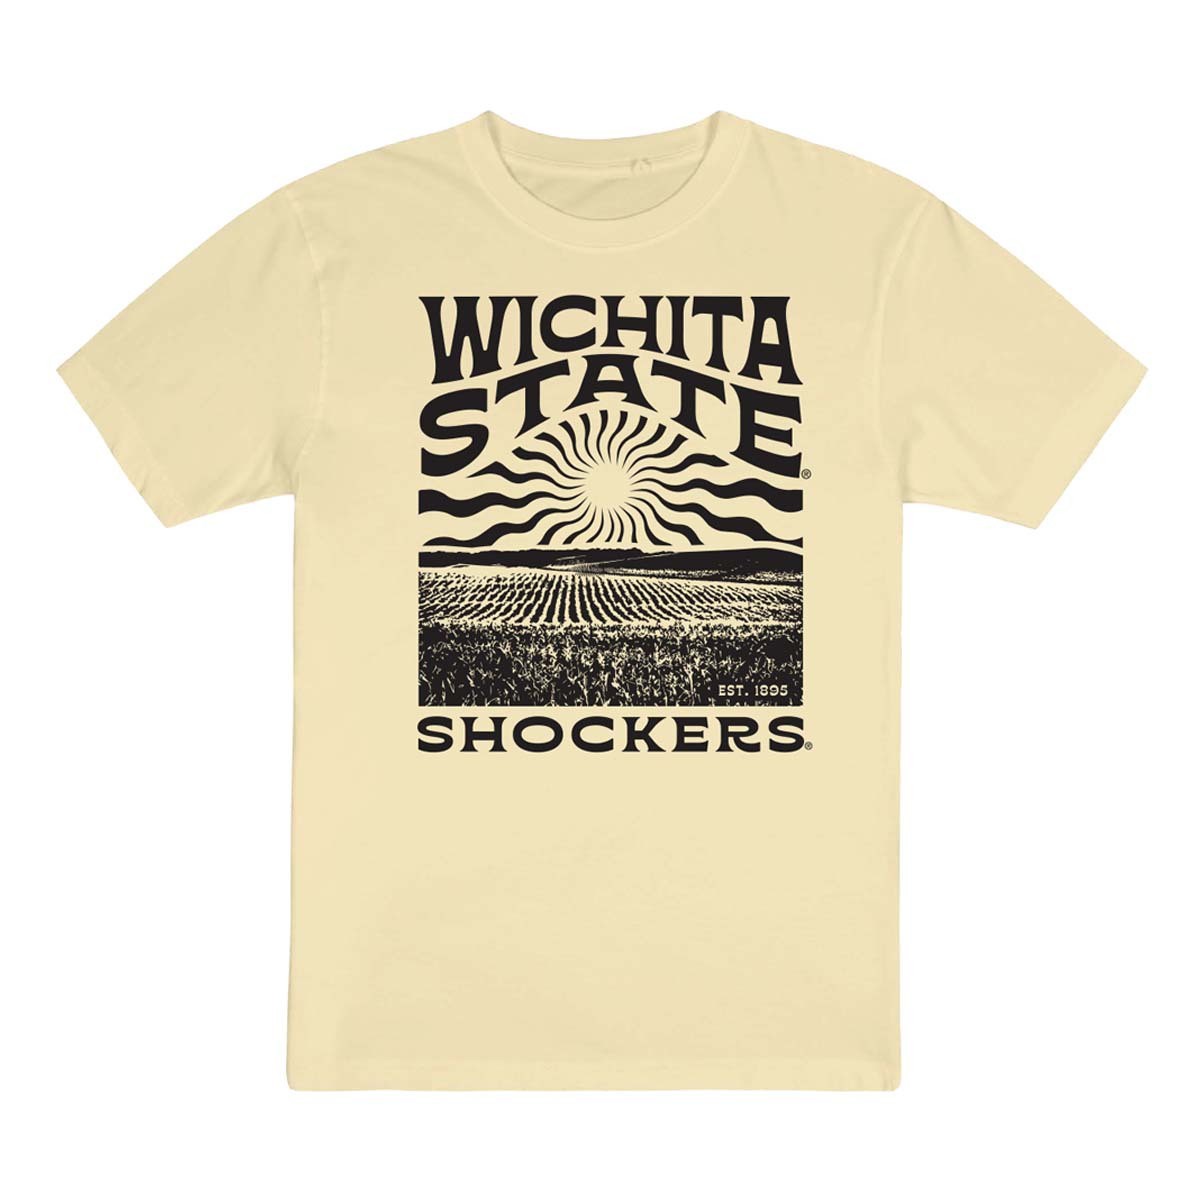 Wichita State Shirt